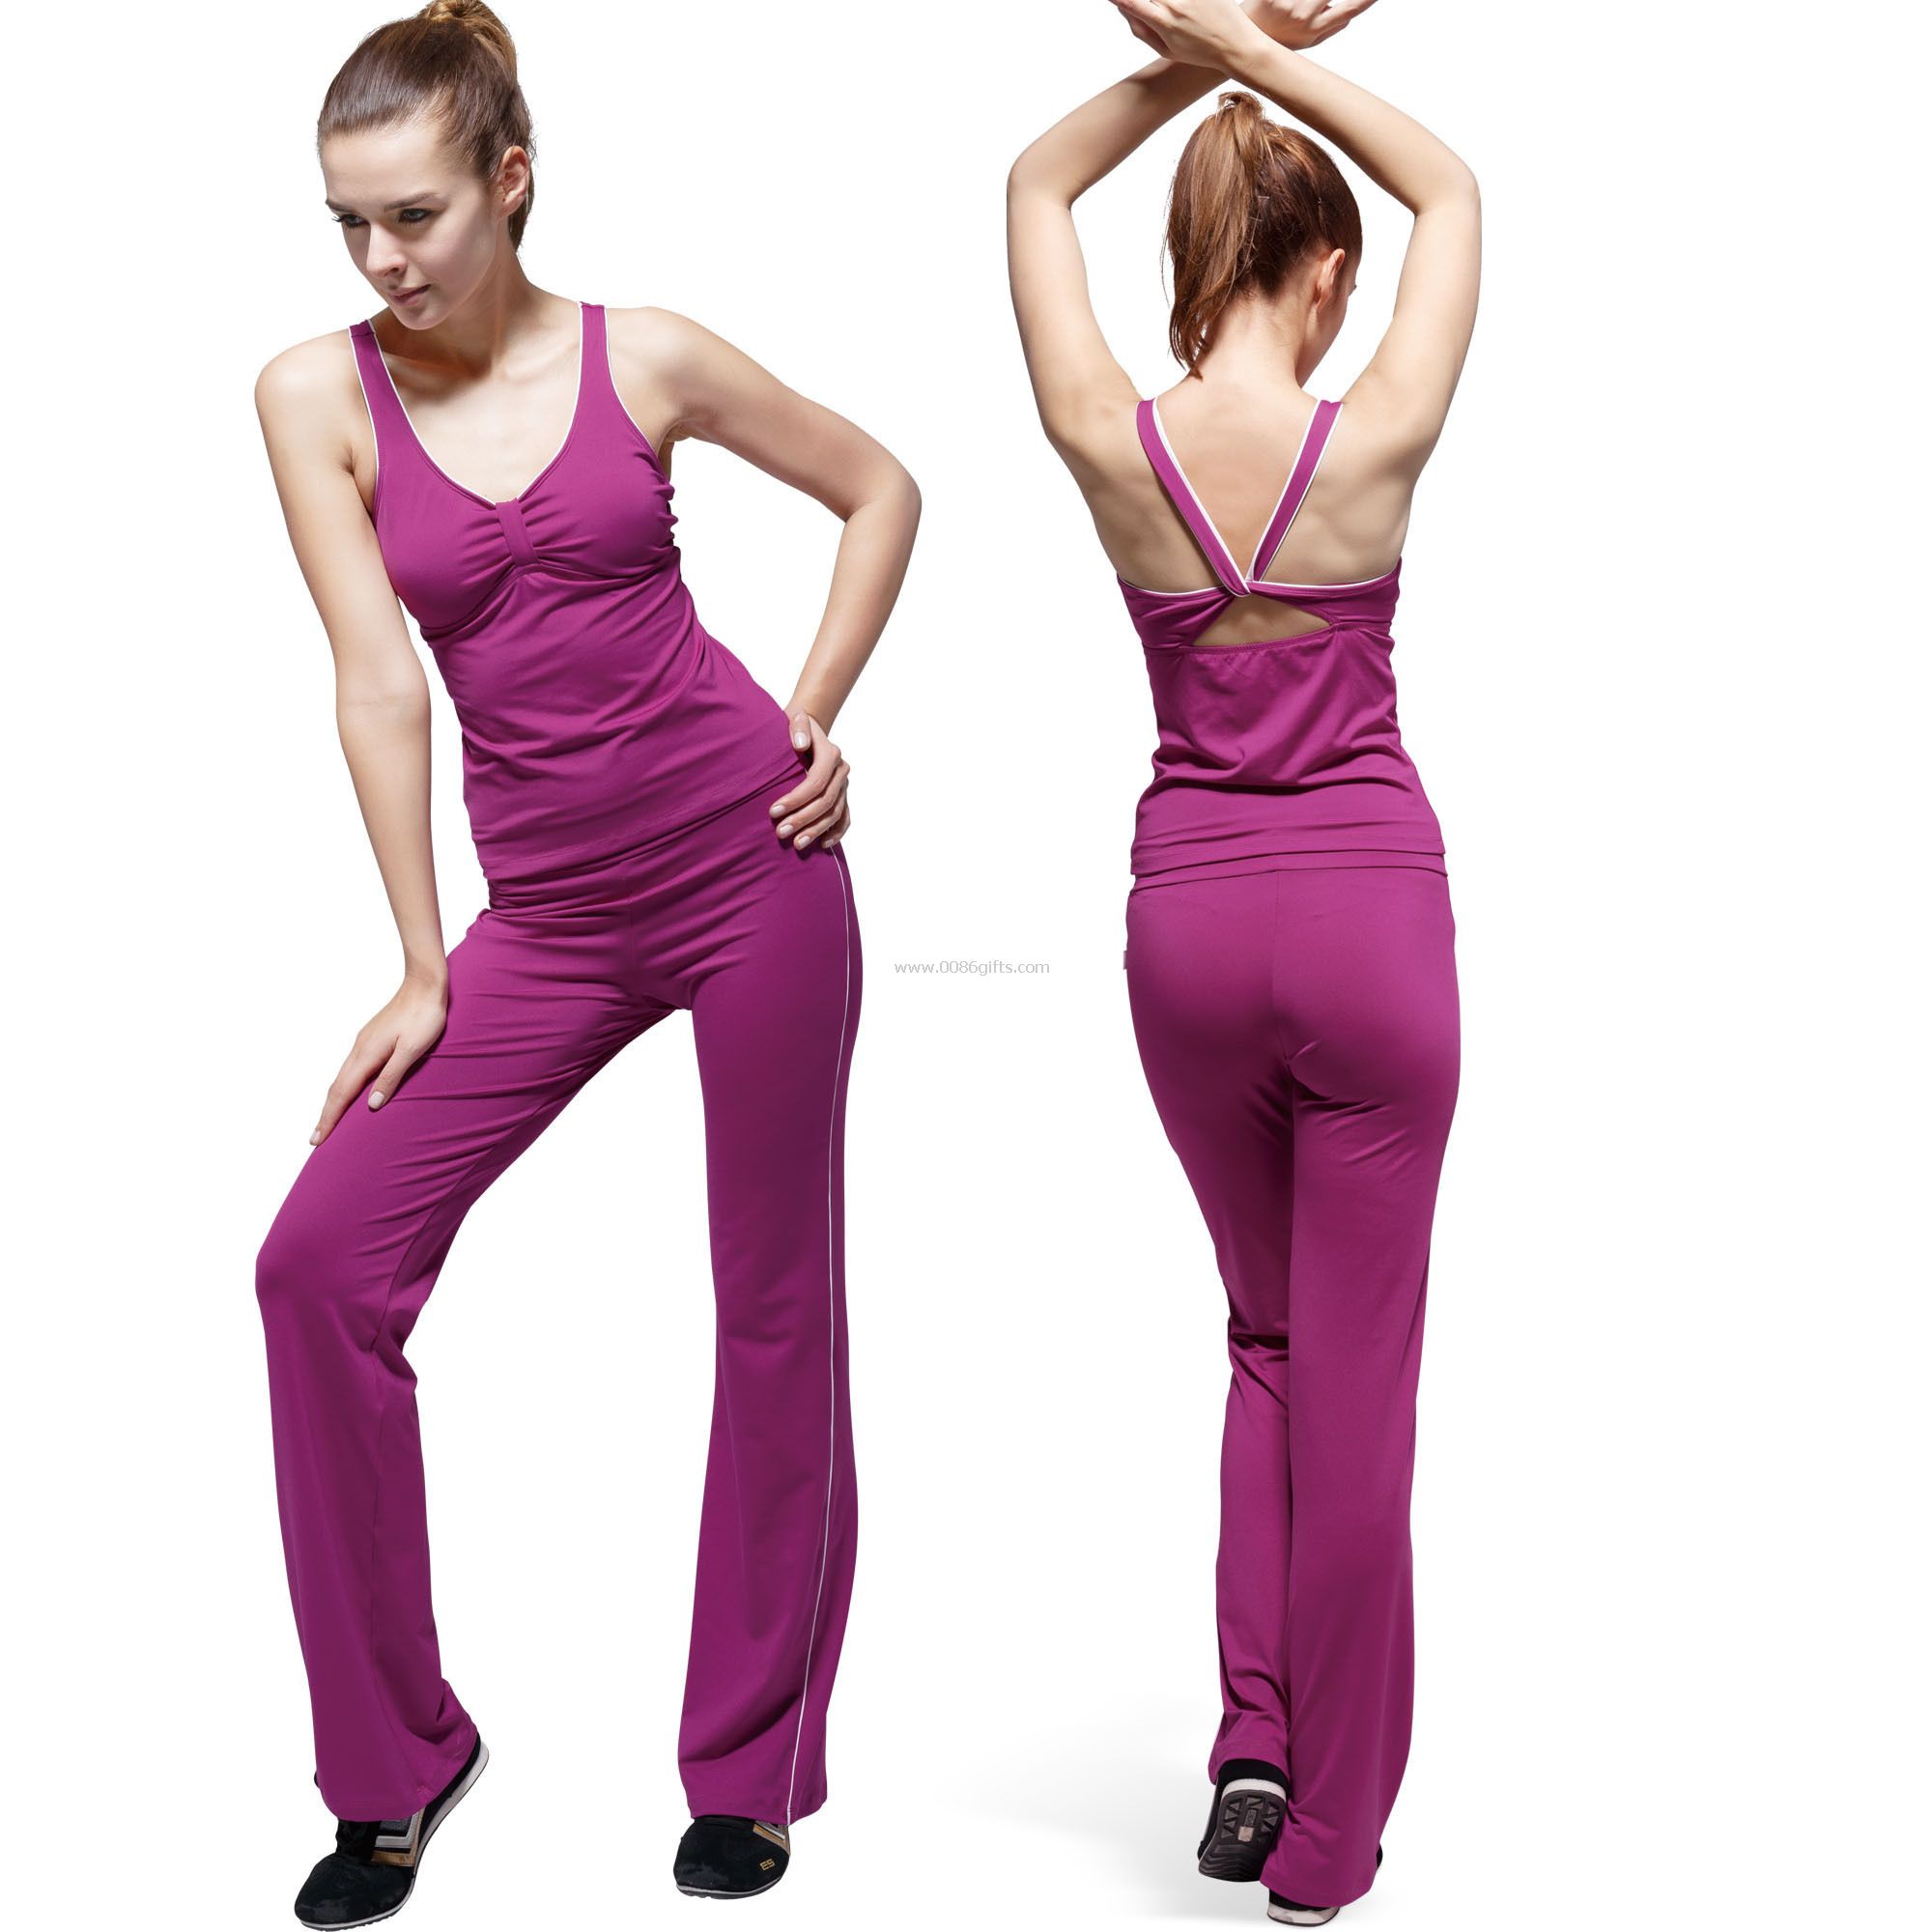 Spandex / bavlna Dámské Fitness oblečení těsné prodyšné s designem hluboký výstřih